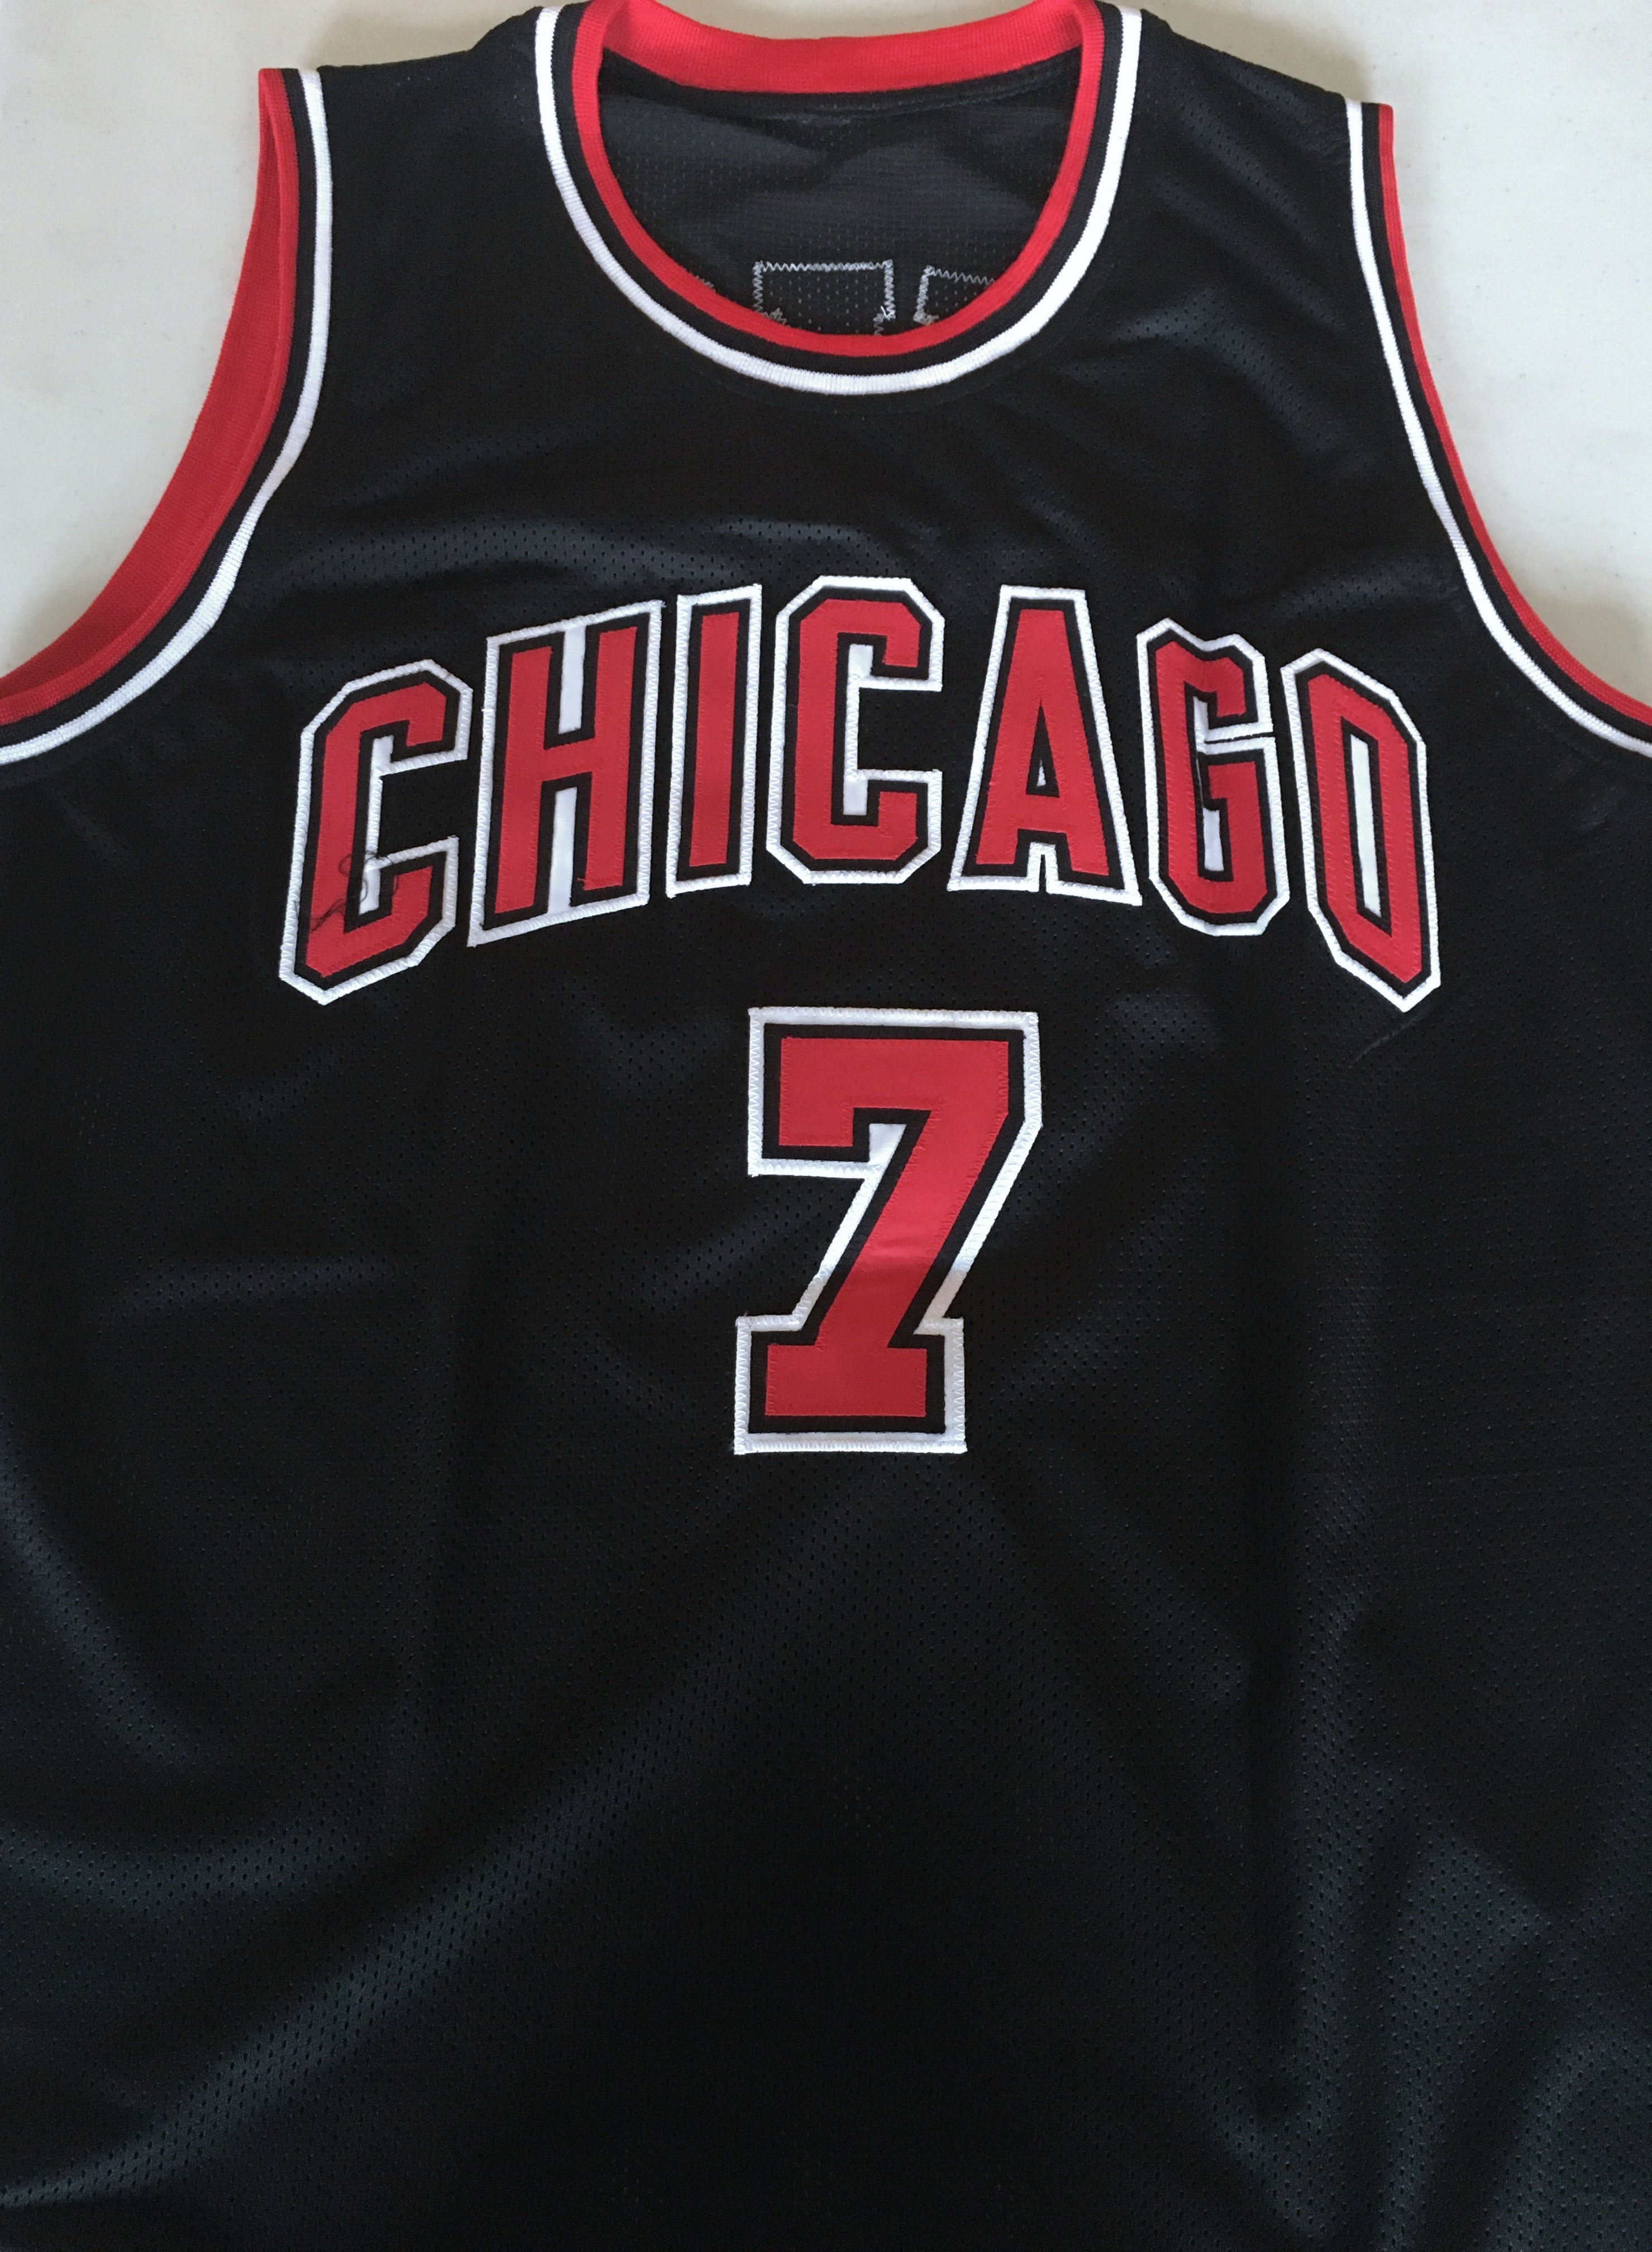 Custom Chicago Bulls Jerseys, Bulls Custom Basketball Jerseys